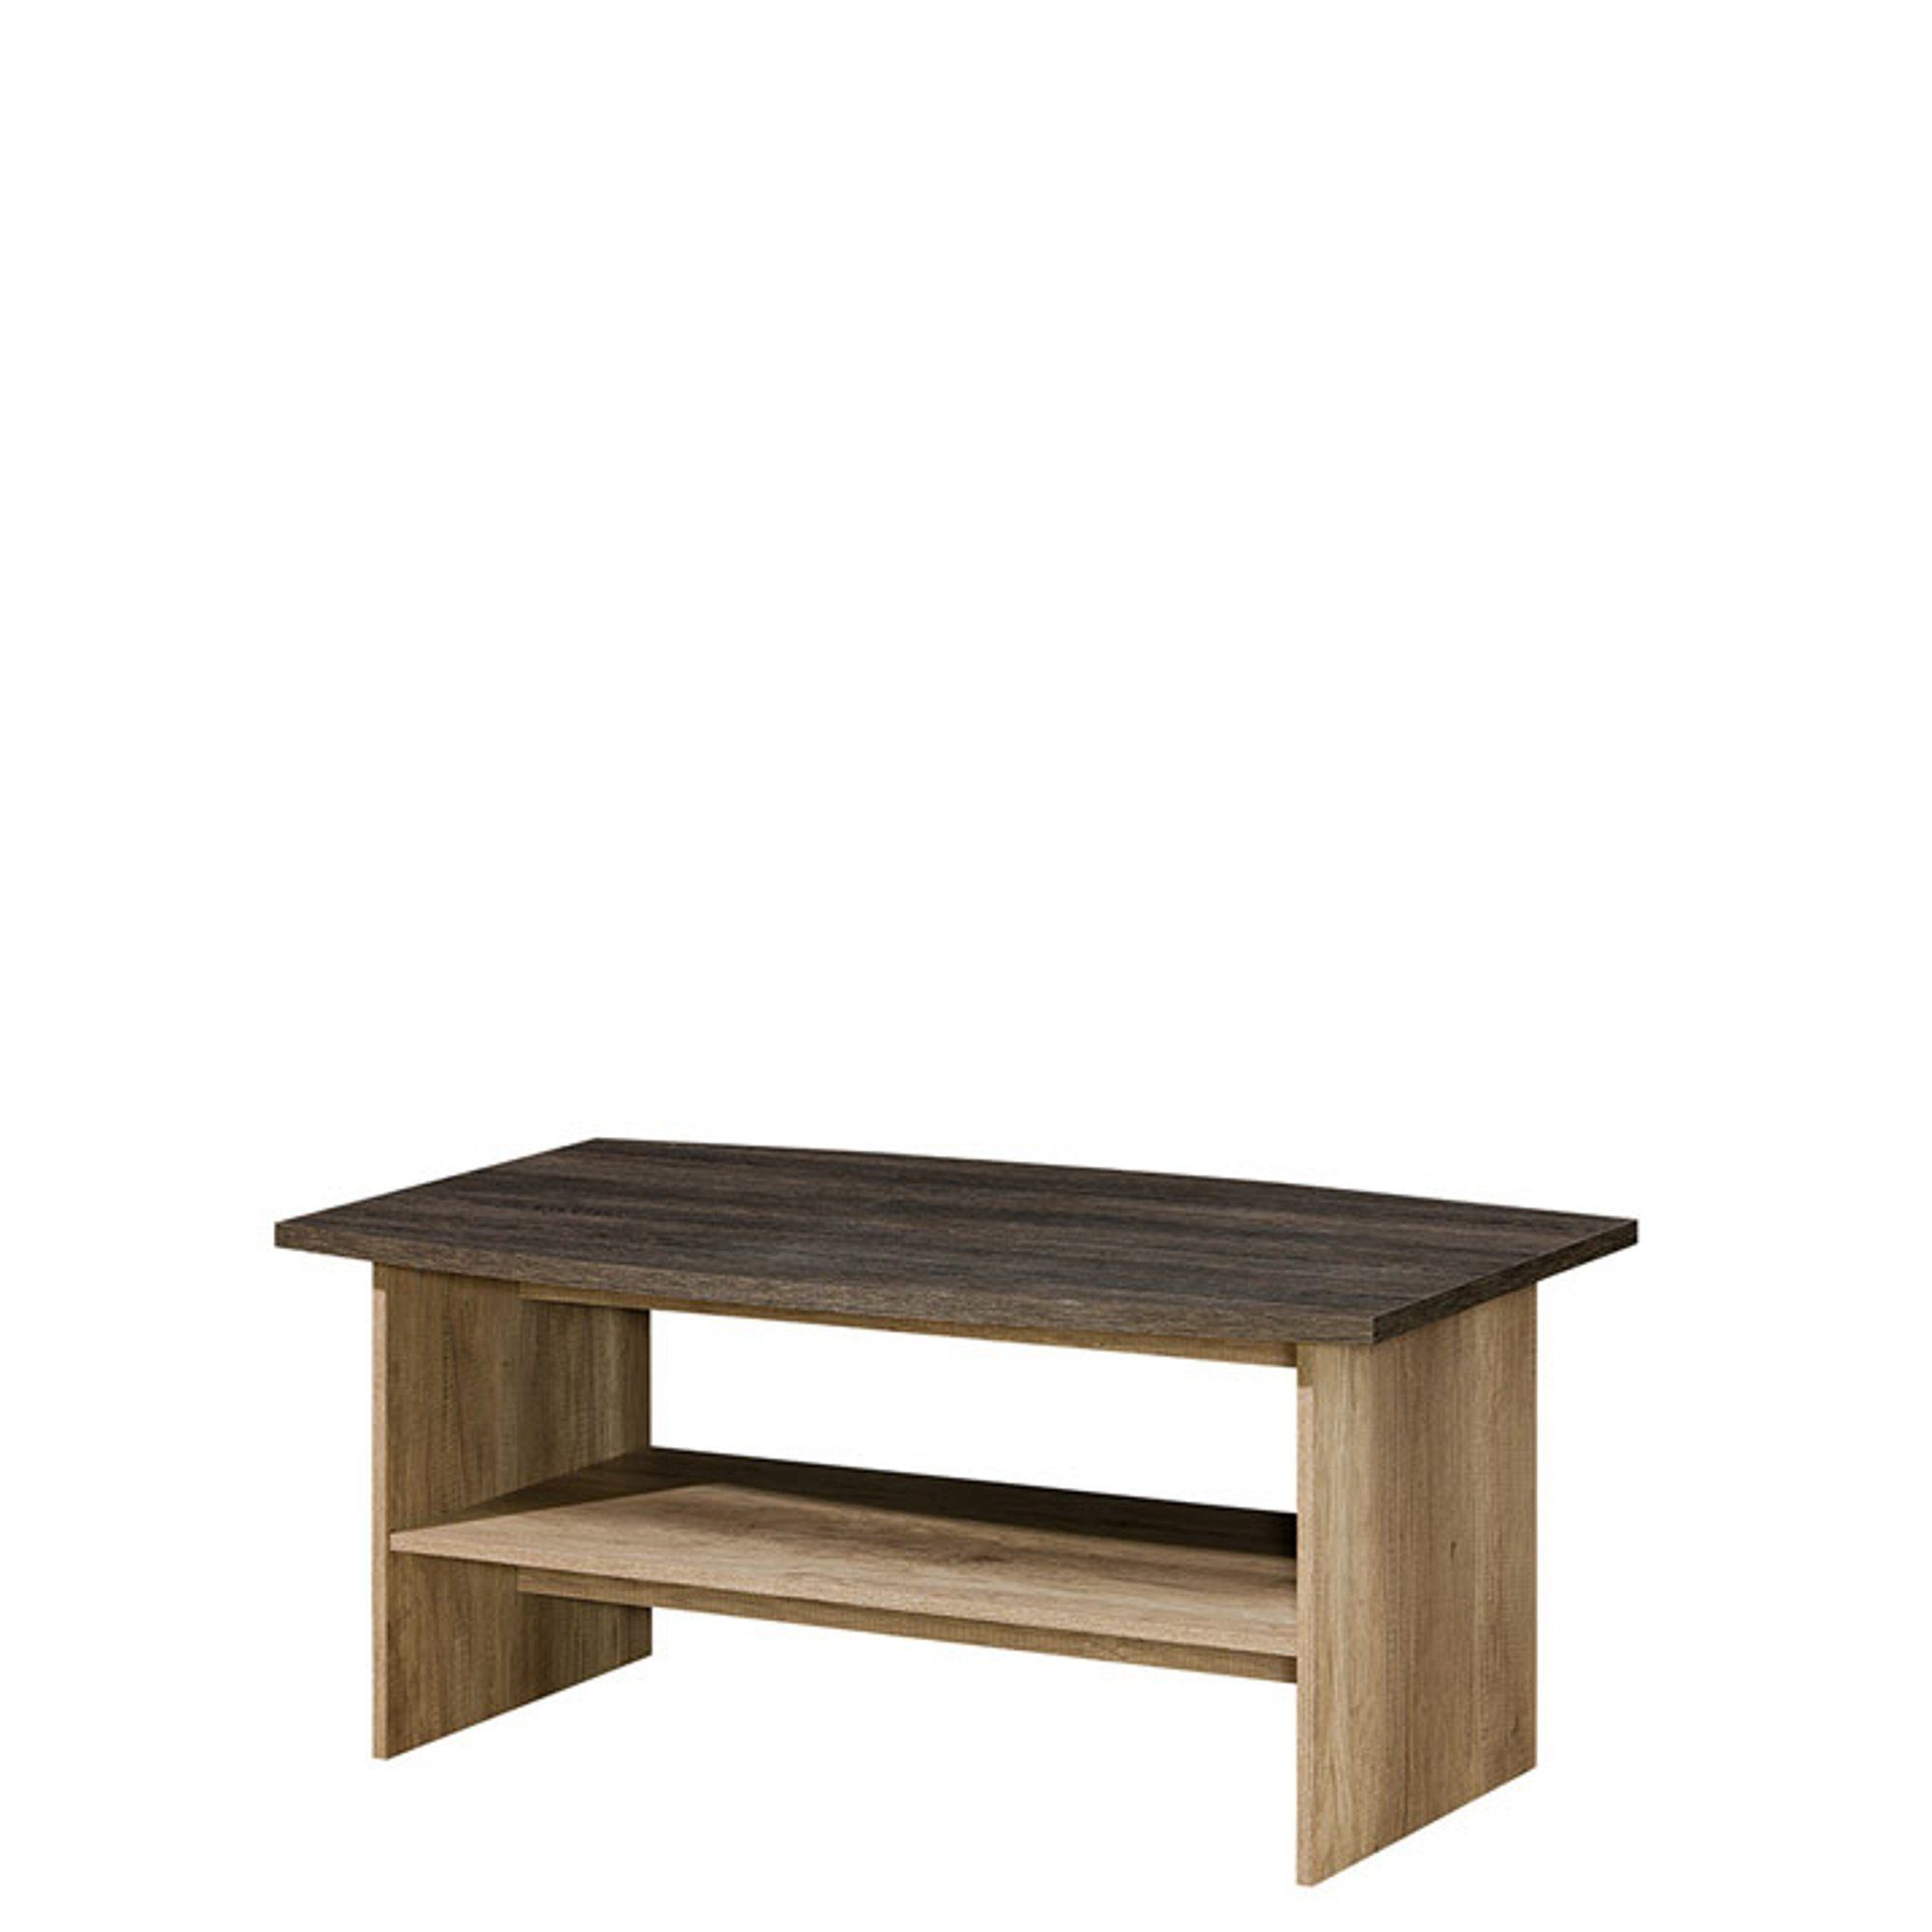 JVmoebel Esstisch Couchtische Tisch Beistelltisch Wohnzimmertisch Holz Sofort (Couchtisch), Made in Europe